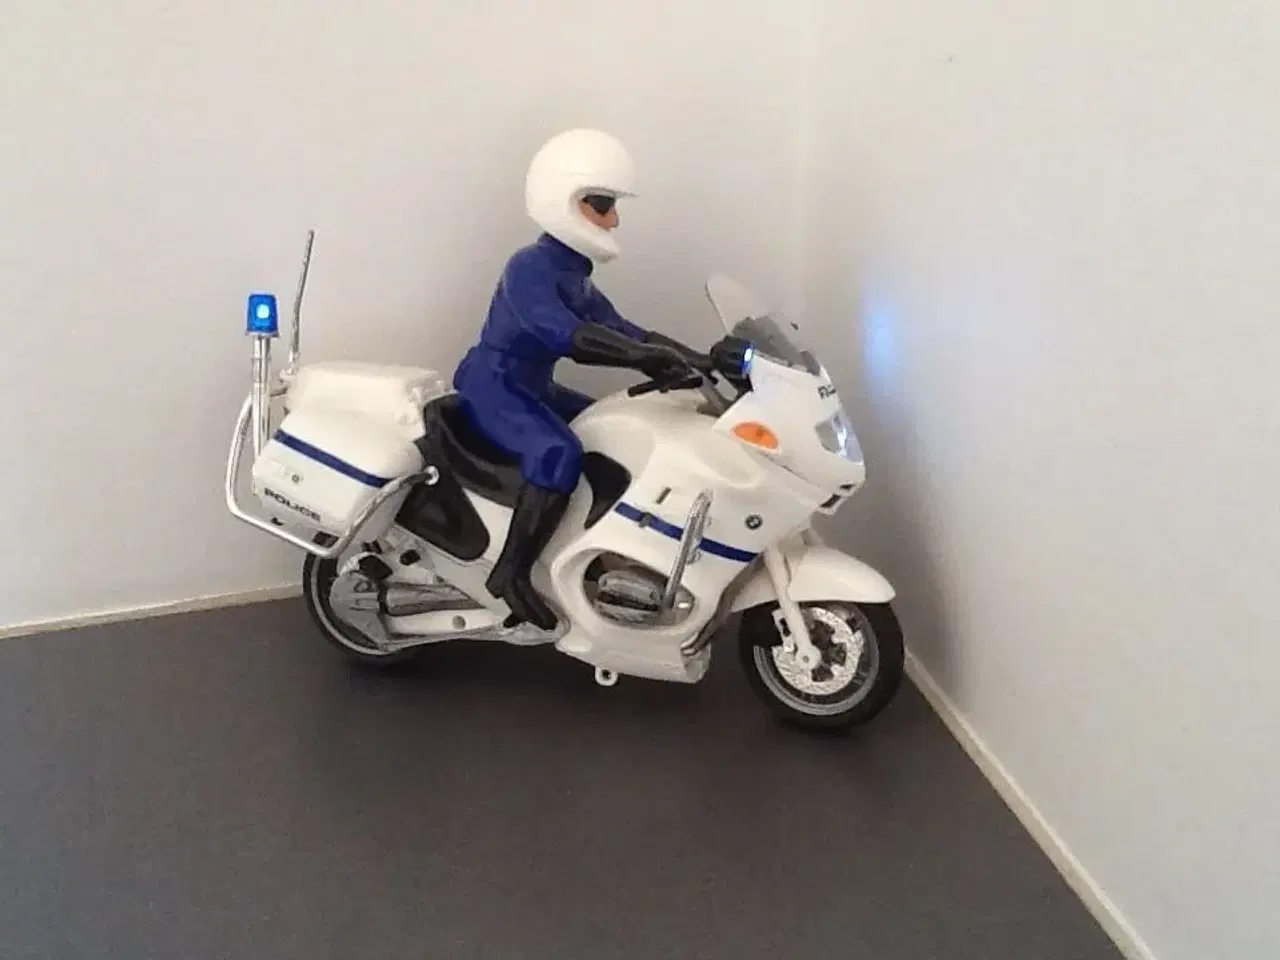 Billede 2 - Politimotorcykel med lys og lyd, BMW.